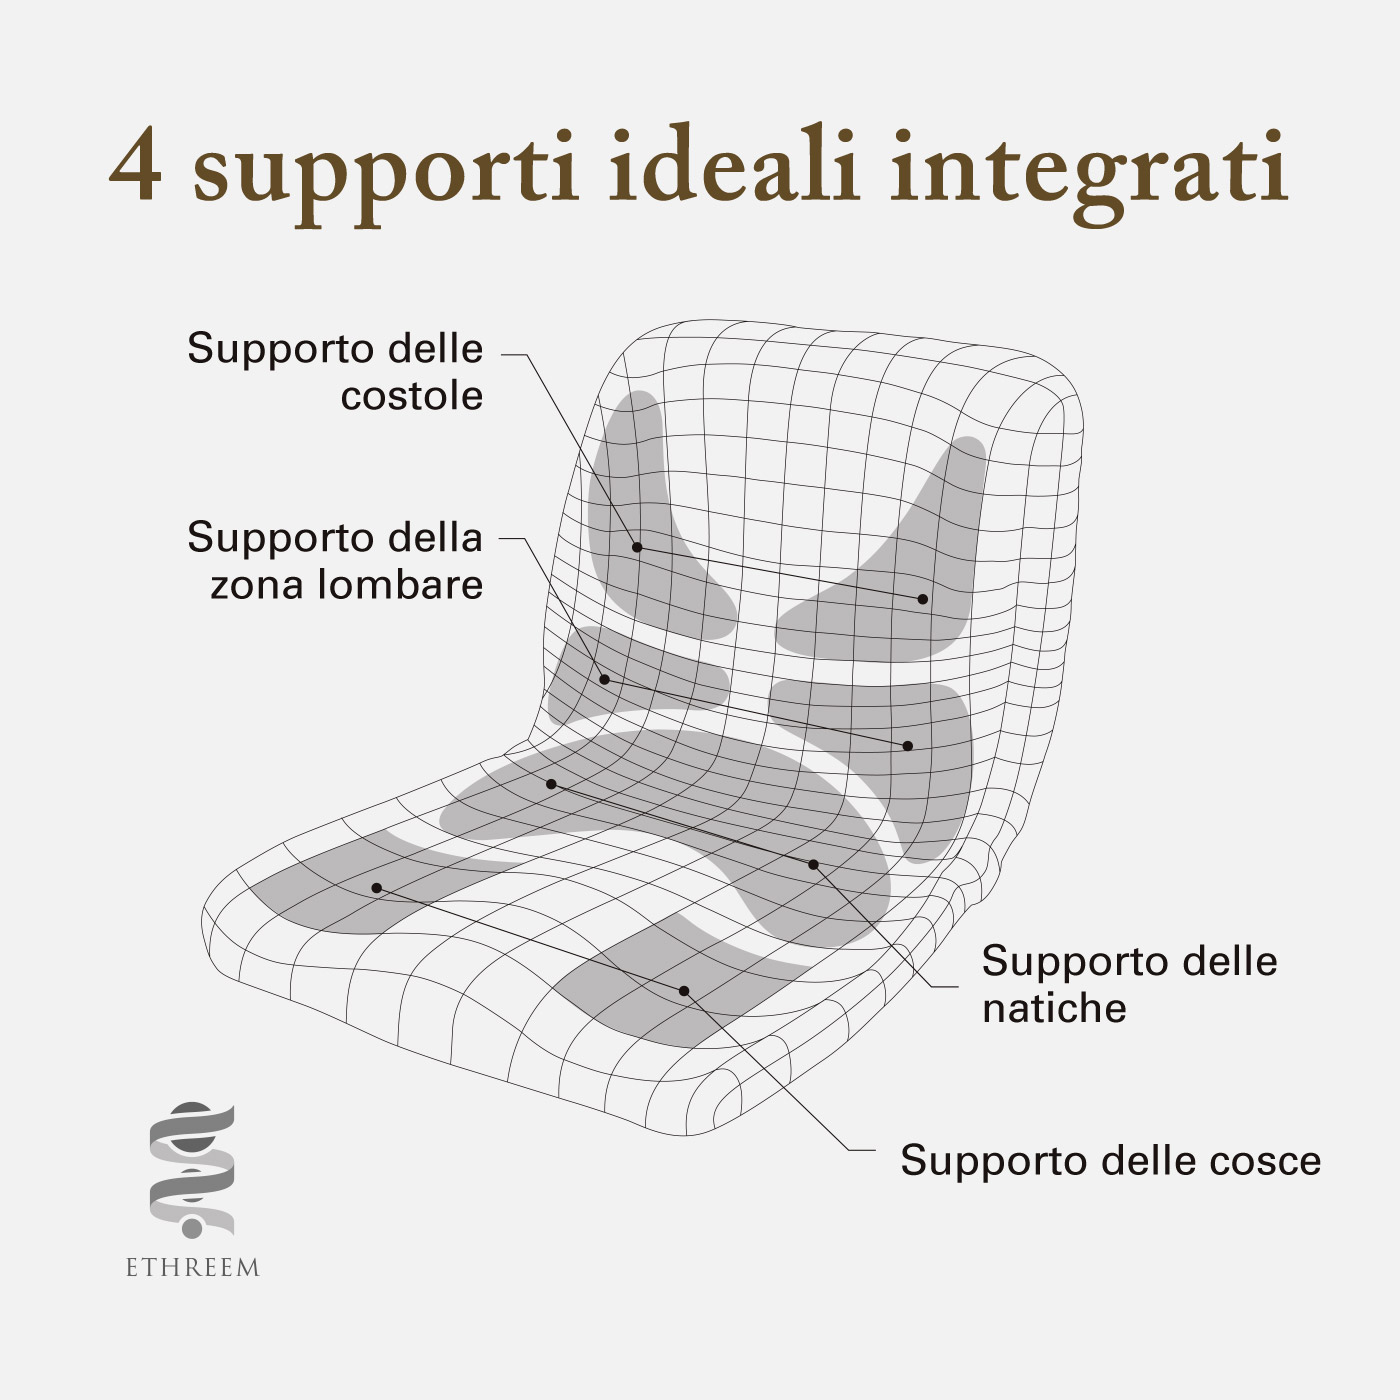 4 supporti ideali integrati